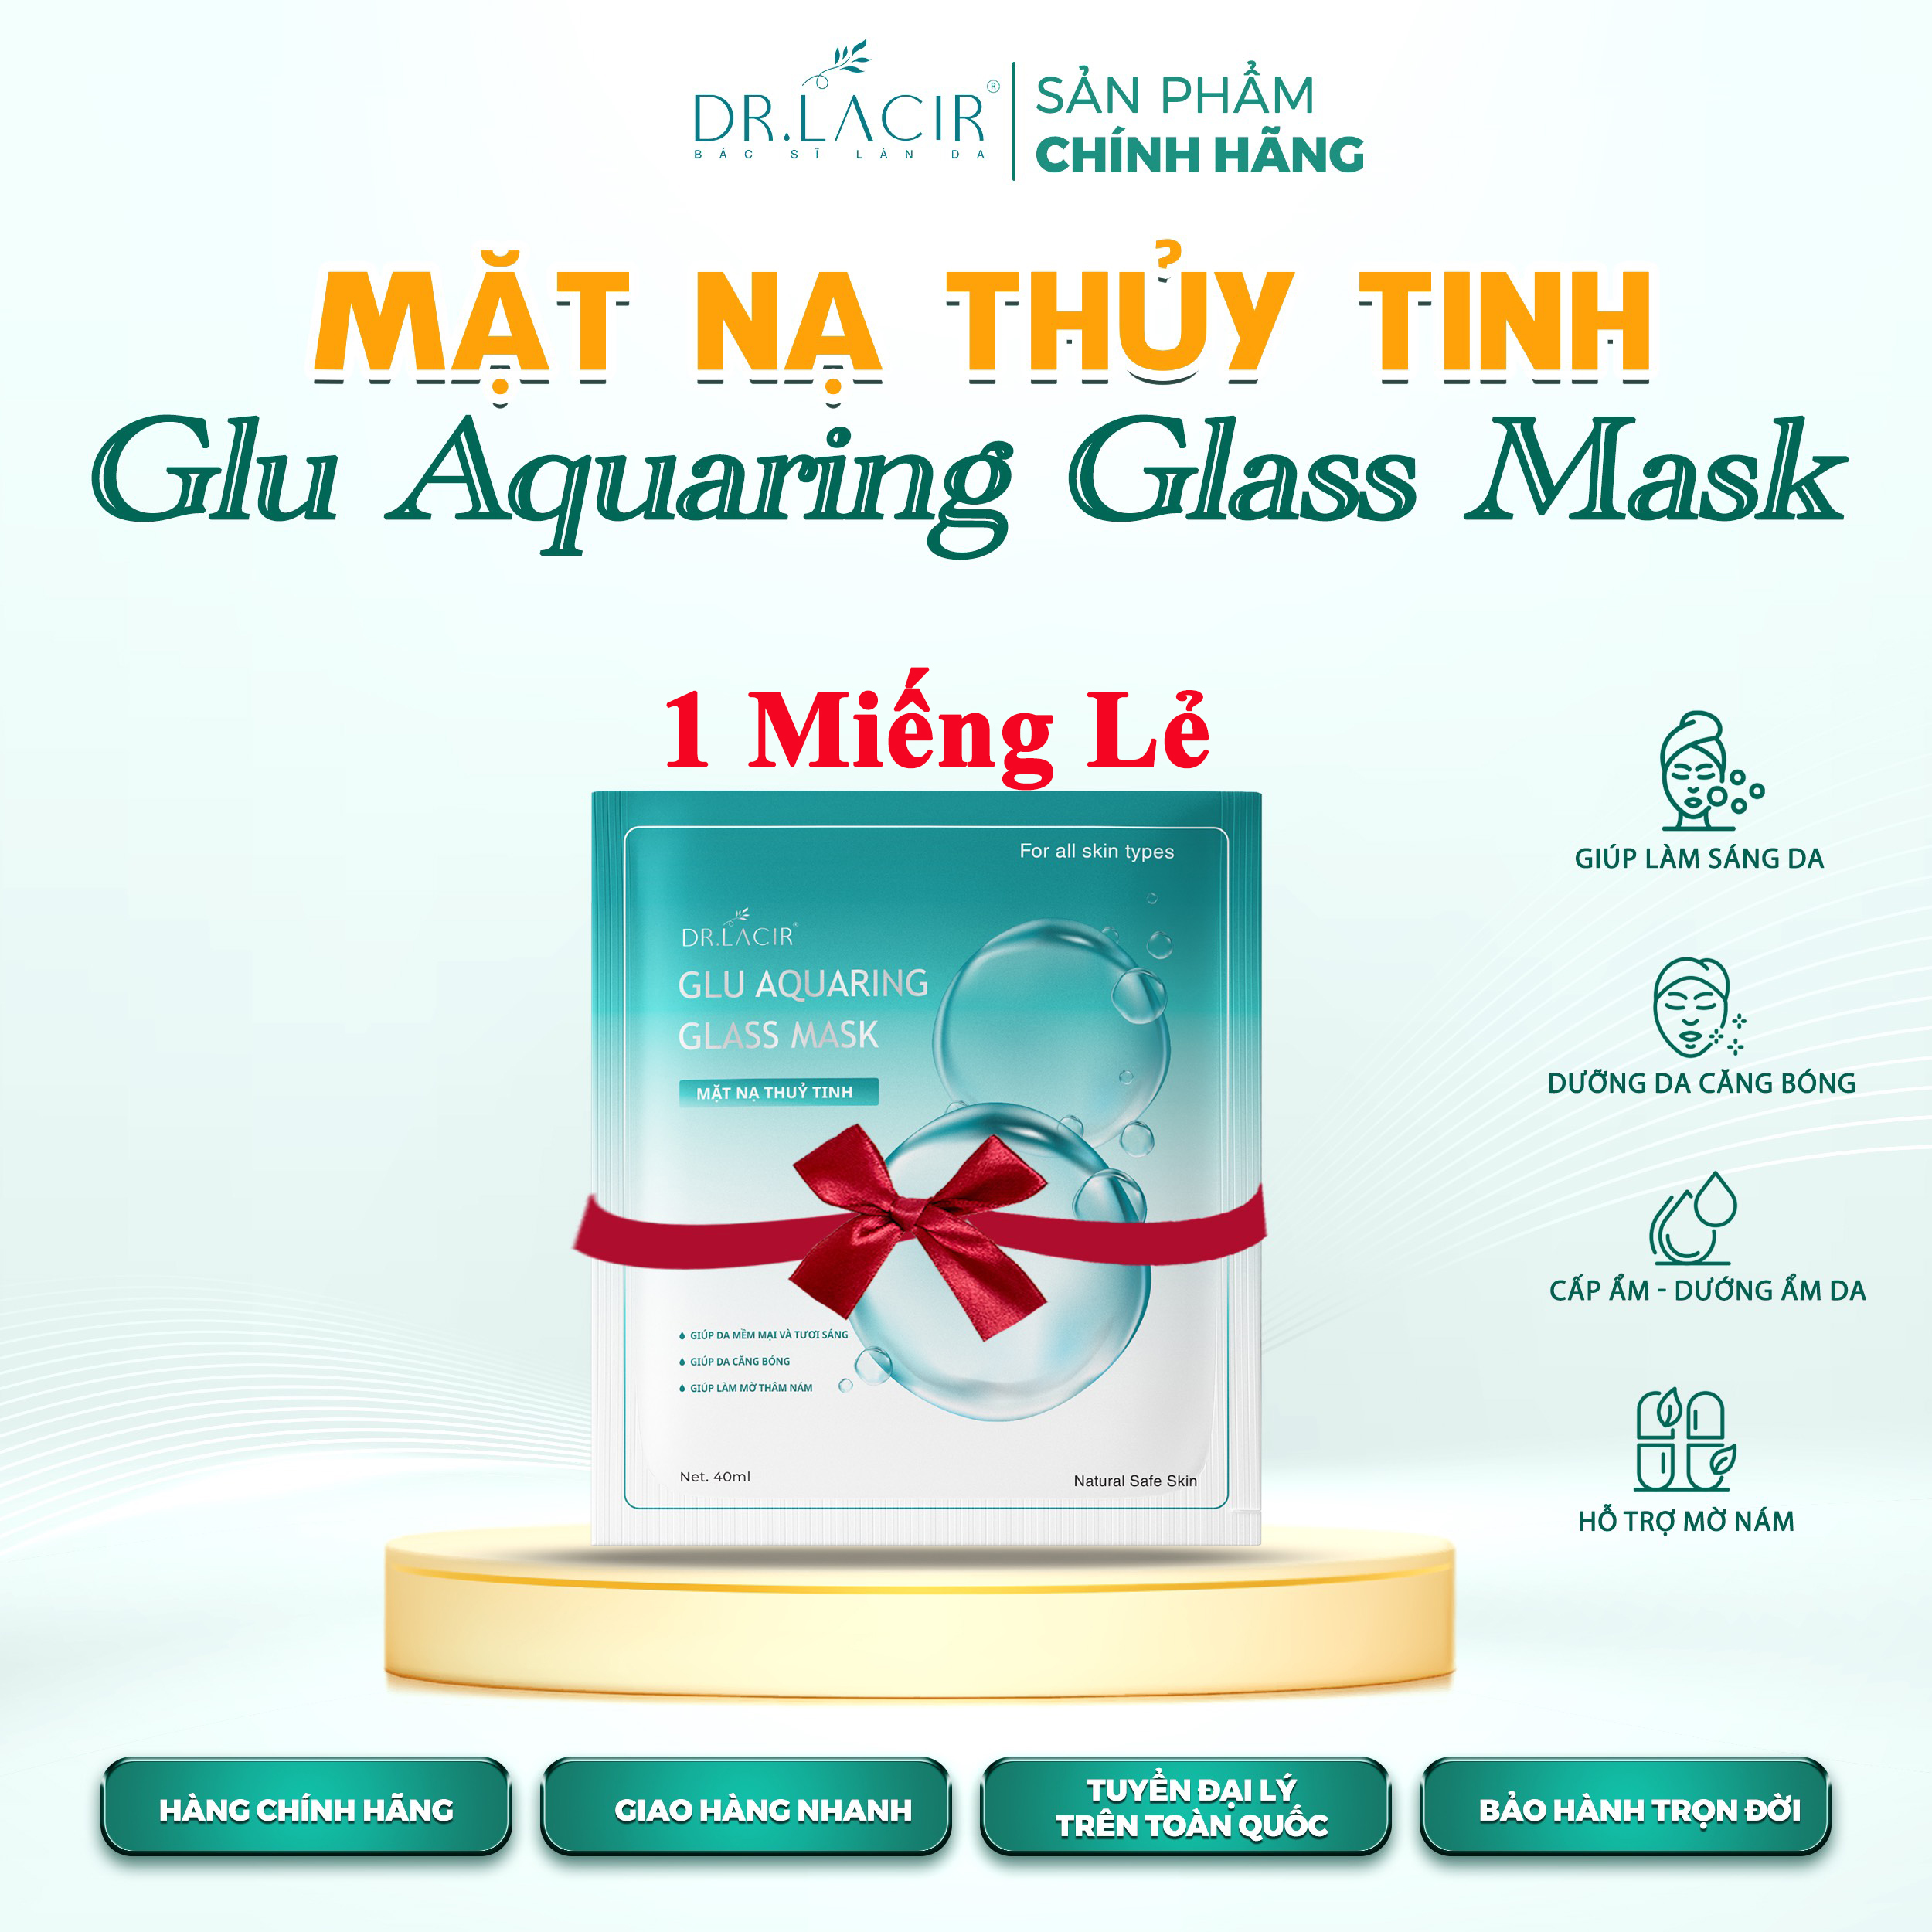 Mặt Nạ Thuỷ Tinh Glutathione Dr Lacir - Glu Aquaring Glass Mask: Dưỡng Ẩm Da, Làm Sáng Da, Giảm Vết Thâm Nám (miếng lẻ)